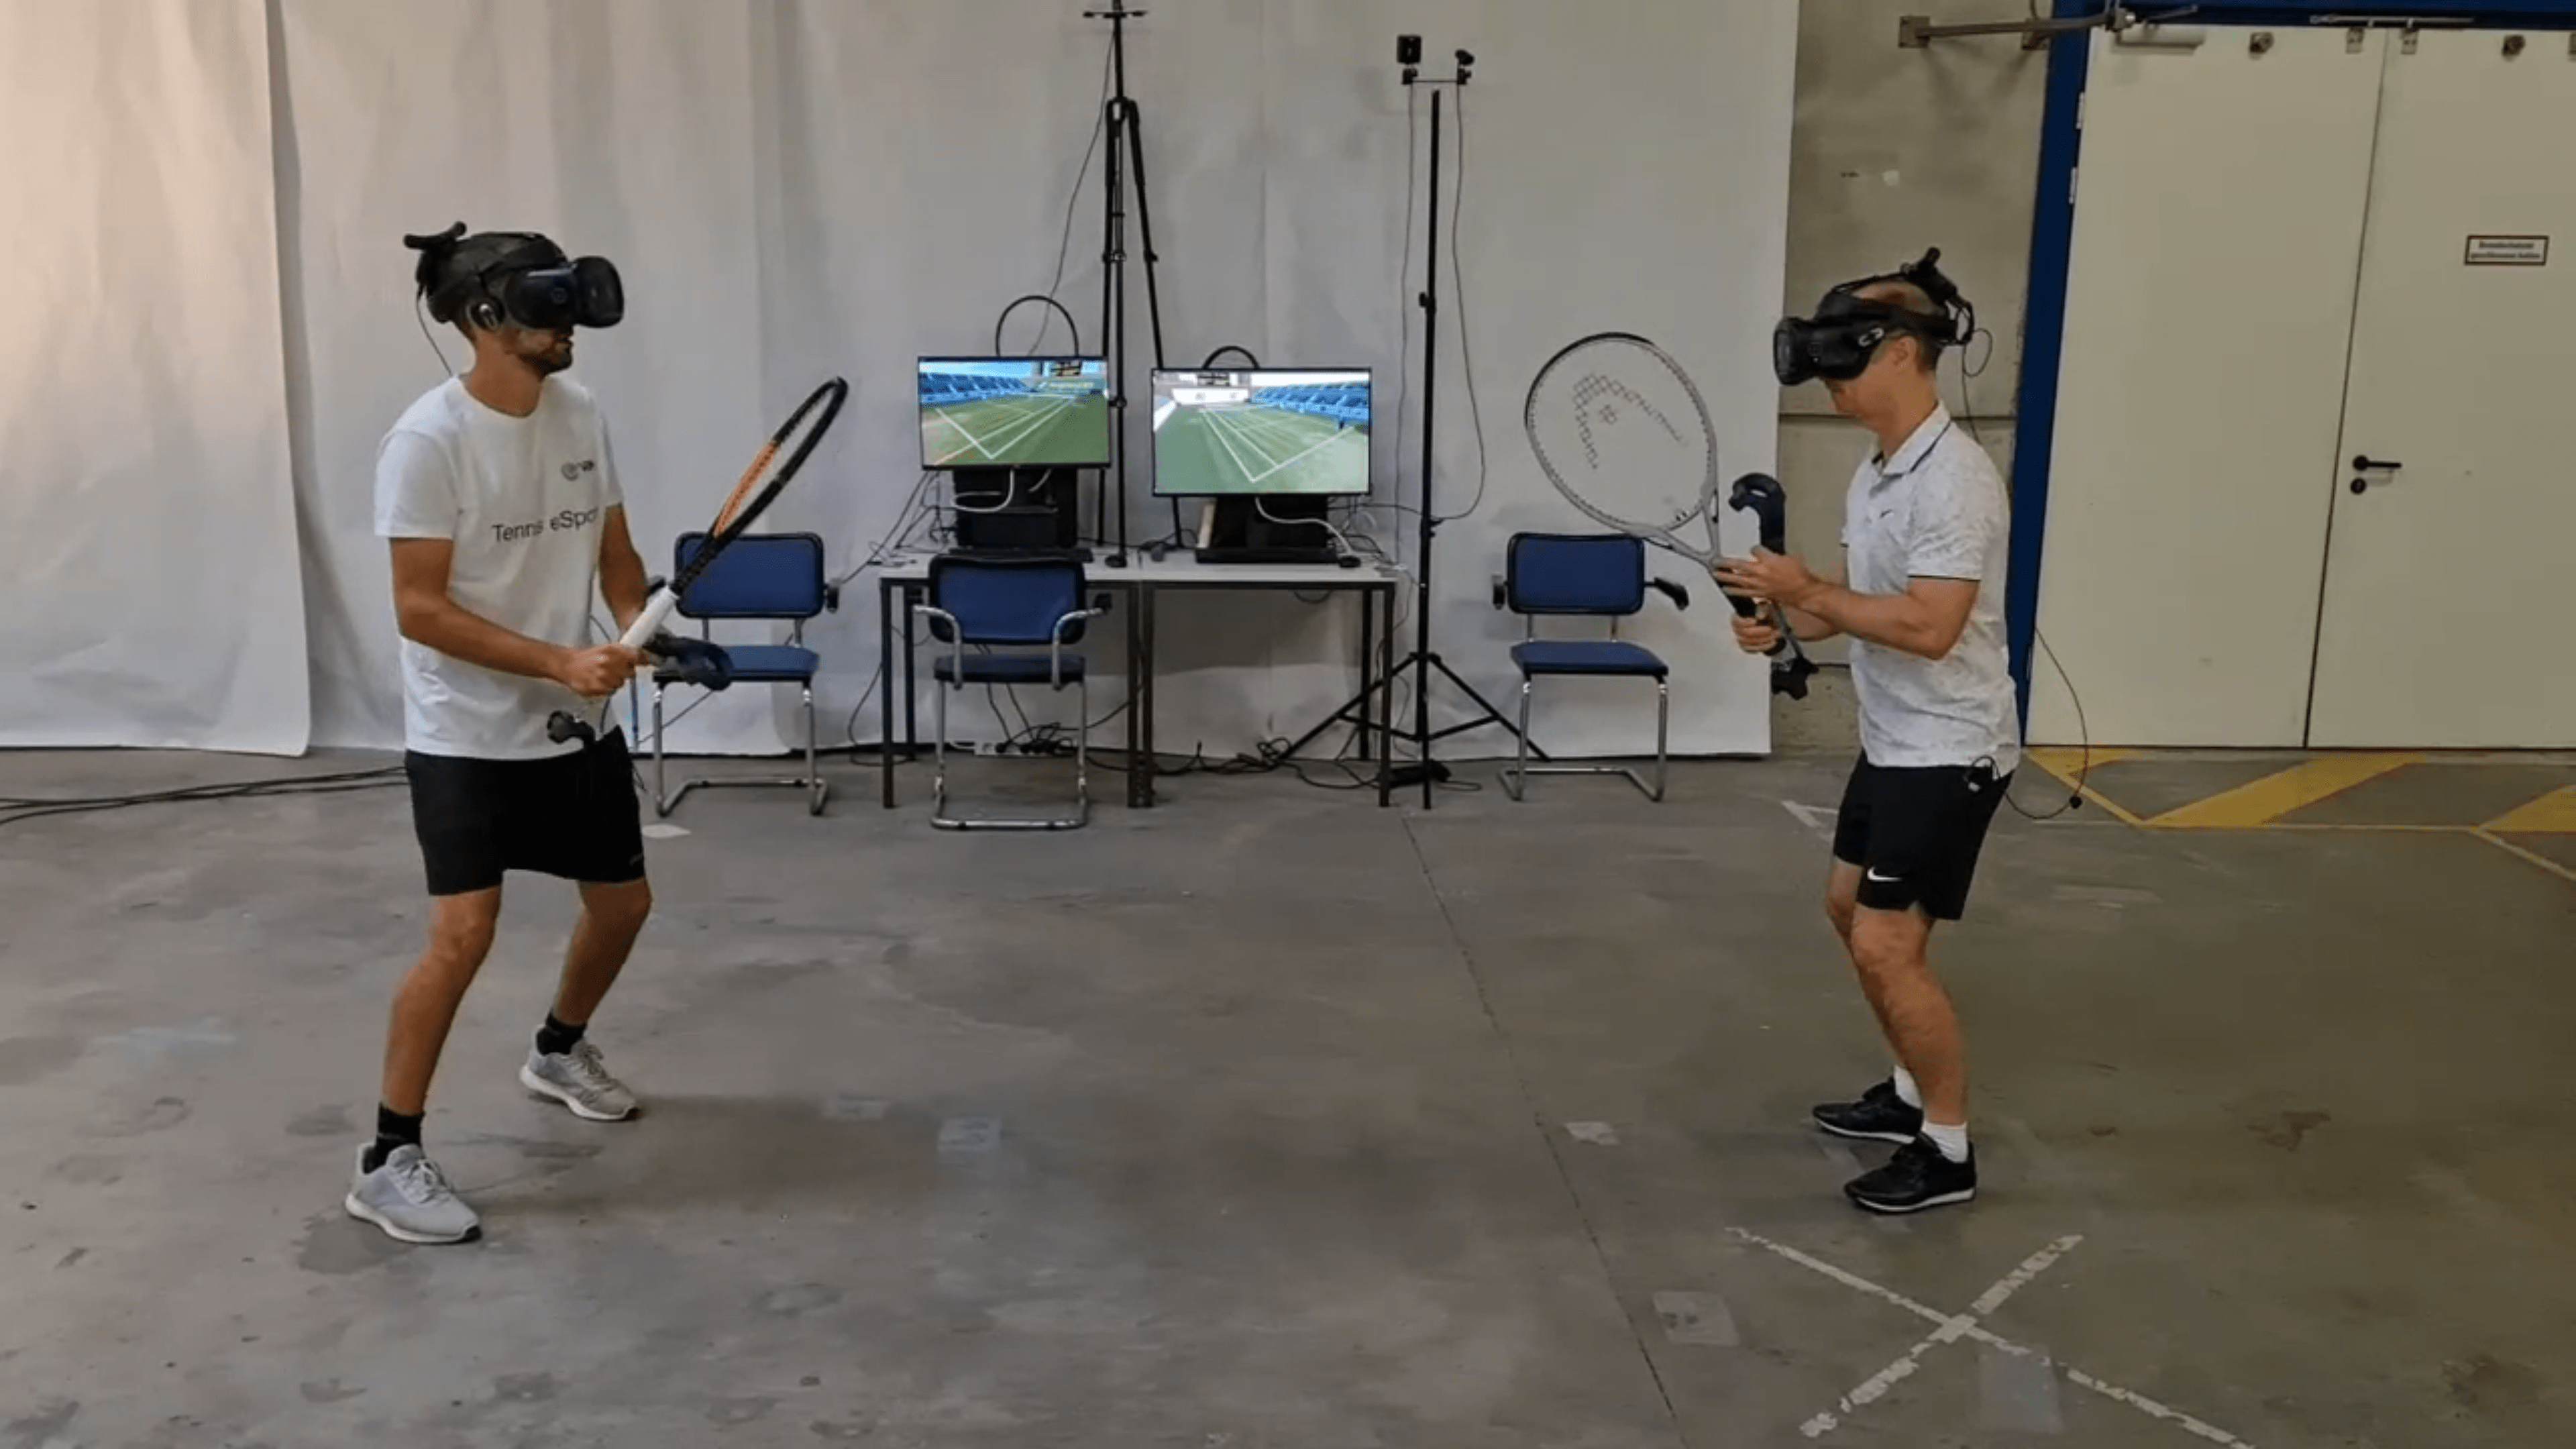 Zwei Männer spielen die VR-Tennis-Simulation Tennis eSports